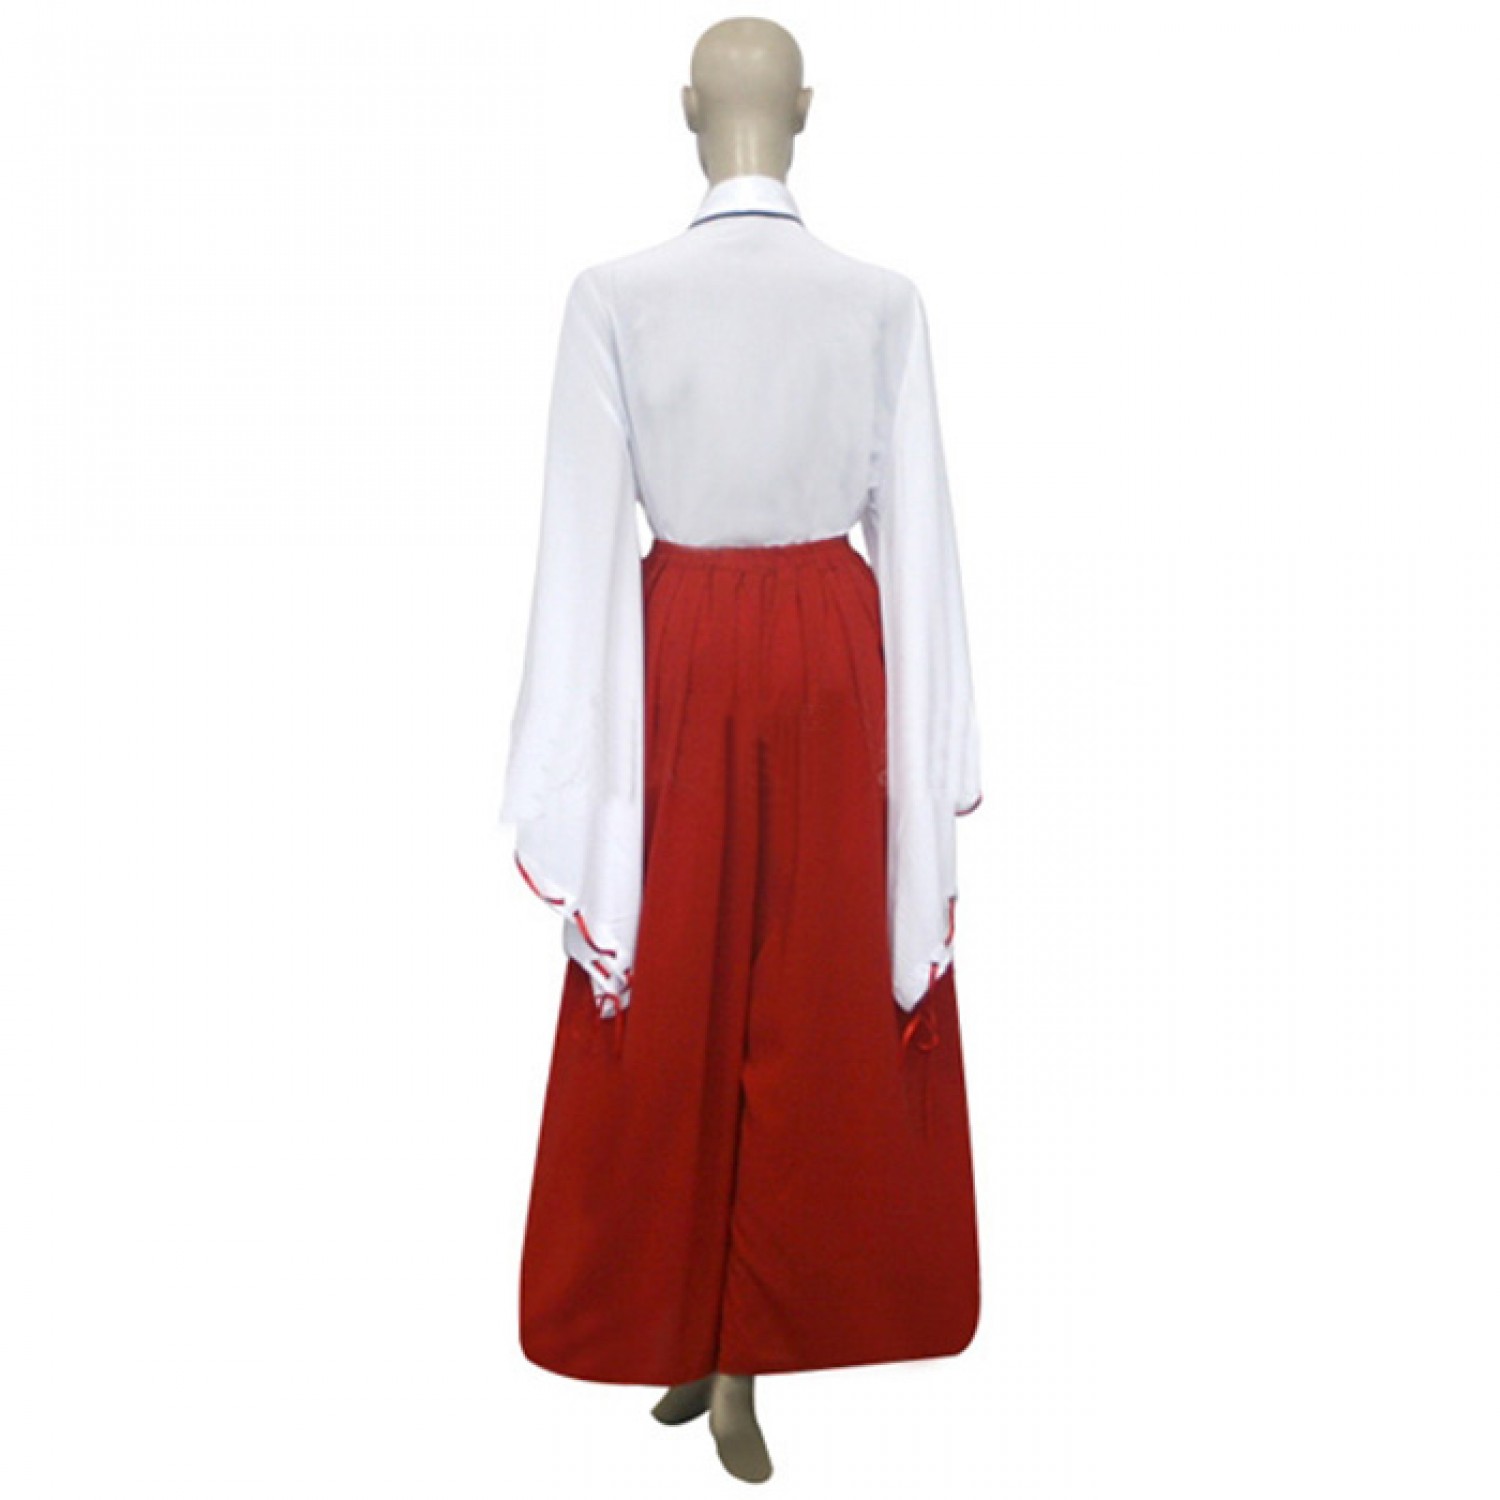 Inuyasha Kikyo Cosplay Outfits Clothing Costume ( free shipping ) - $39.99